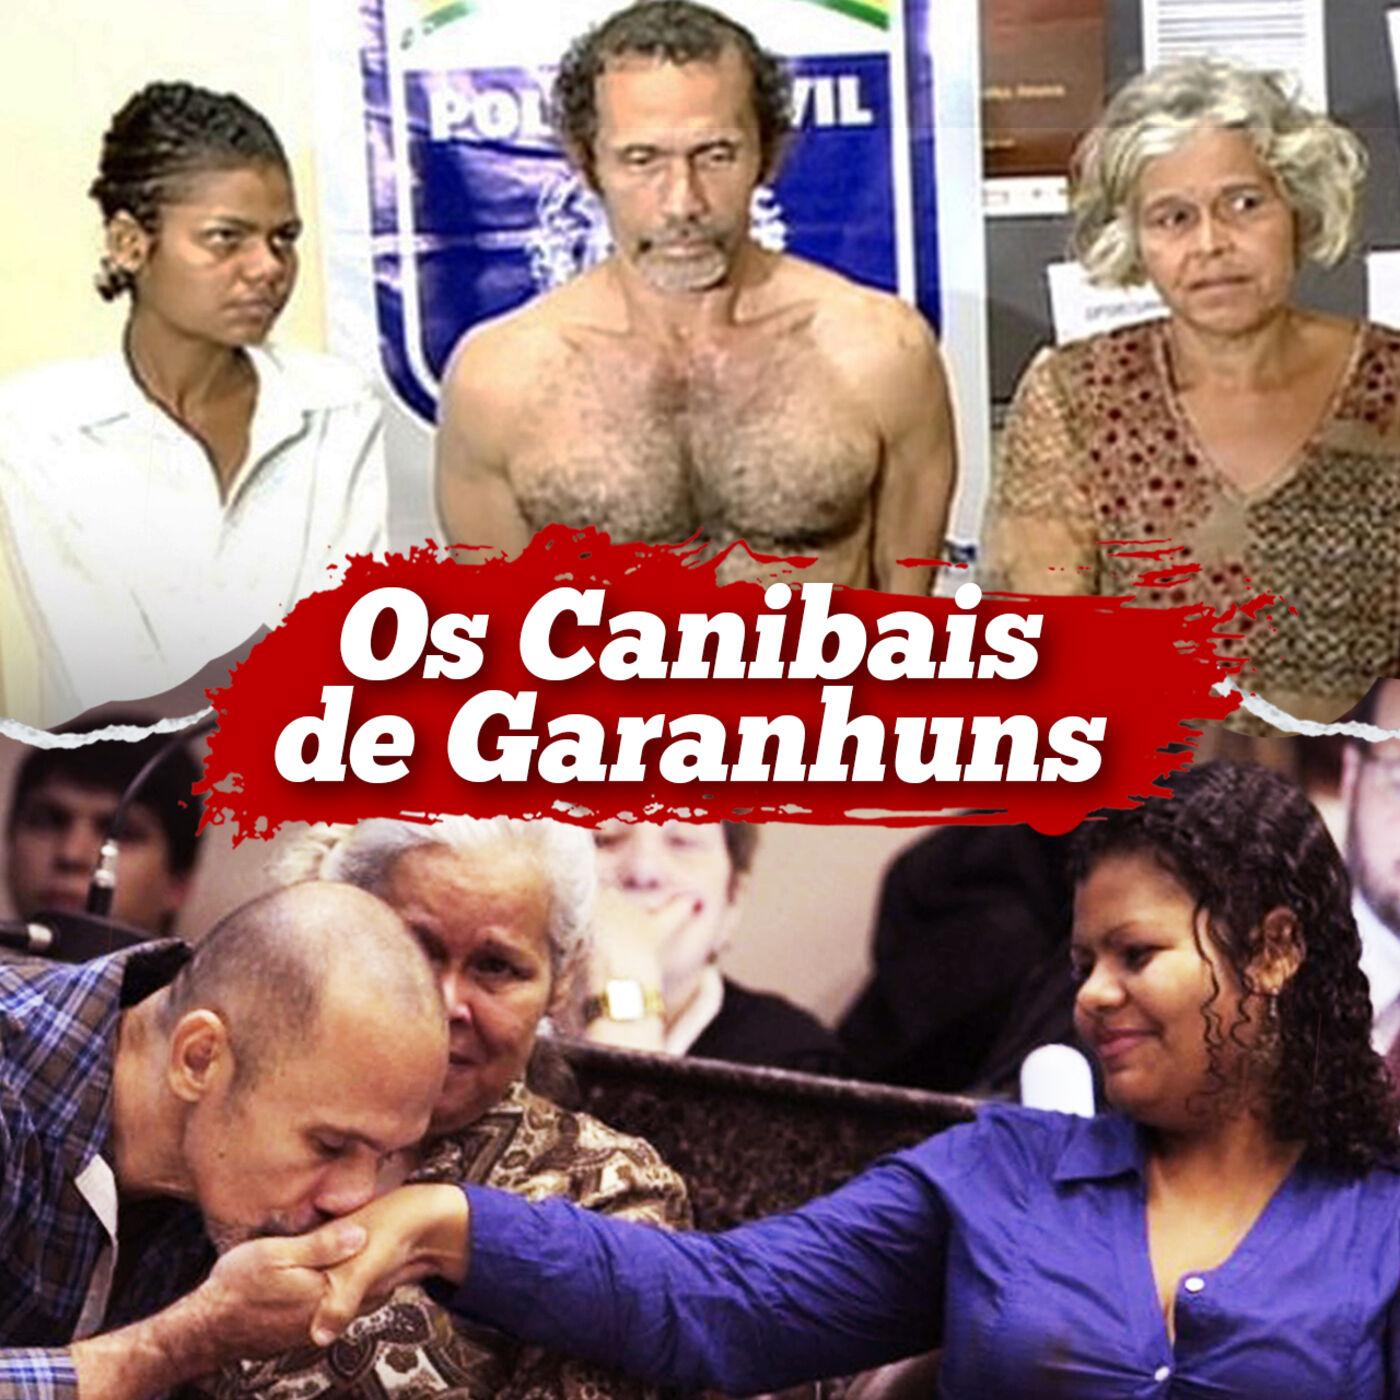 OS CANIBAIS DE GARANHUNS